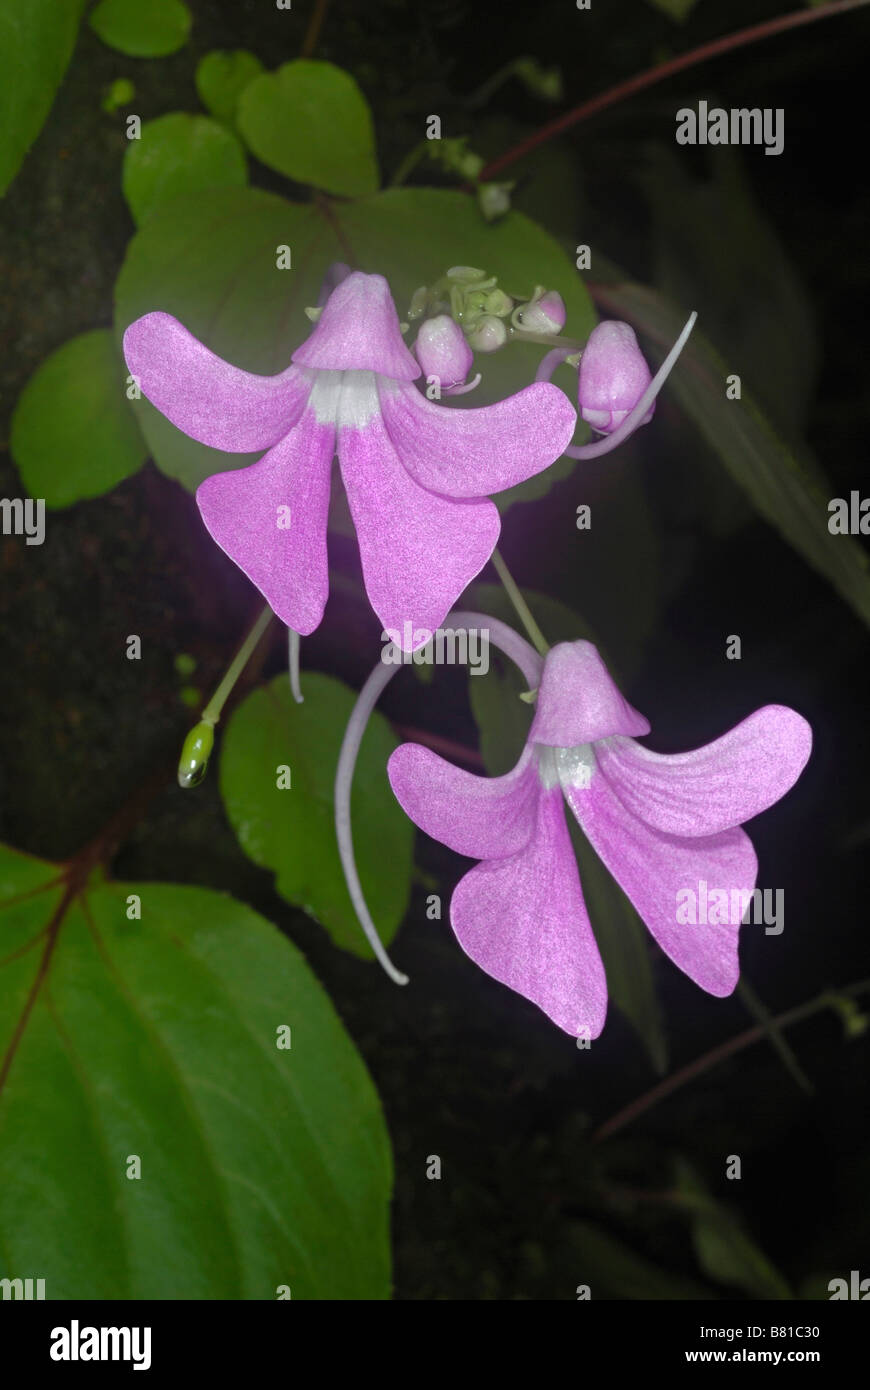 Blumen von Impatiens Acaulis. Arten von indigenen Balsame in Indien gefunden. Stockfoto